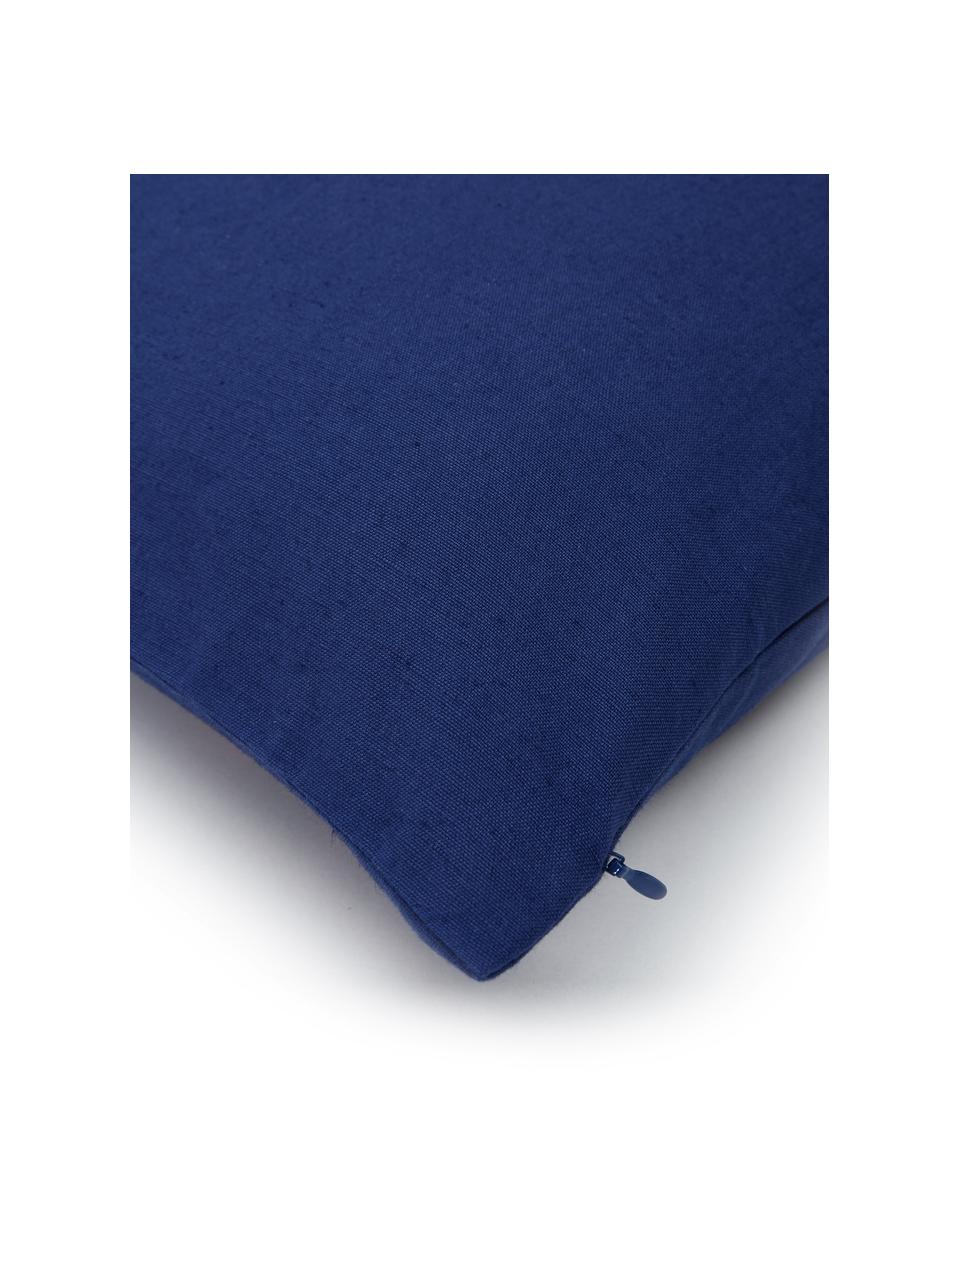 Poszewka na poduszkę z haftem Lore, 100% bawełna, Wielobarwny, S 45 x D 45 cm